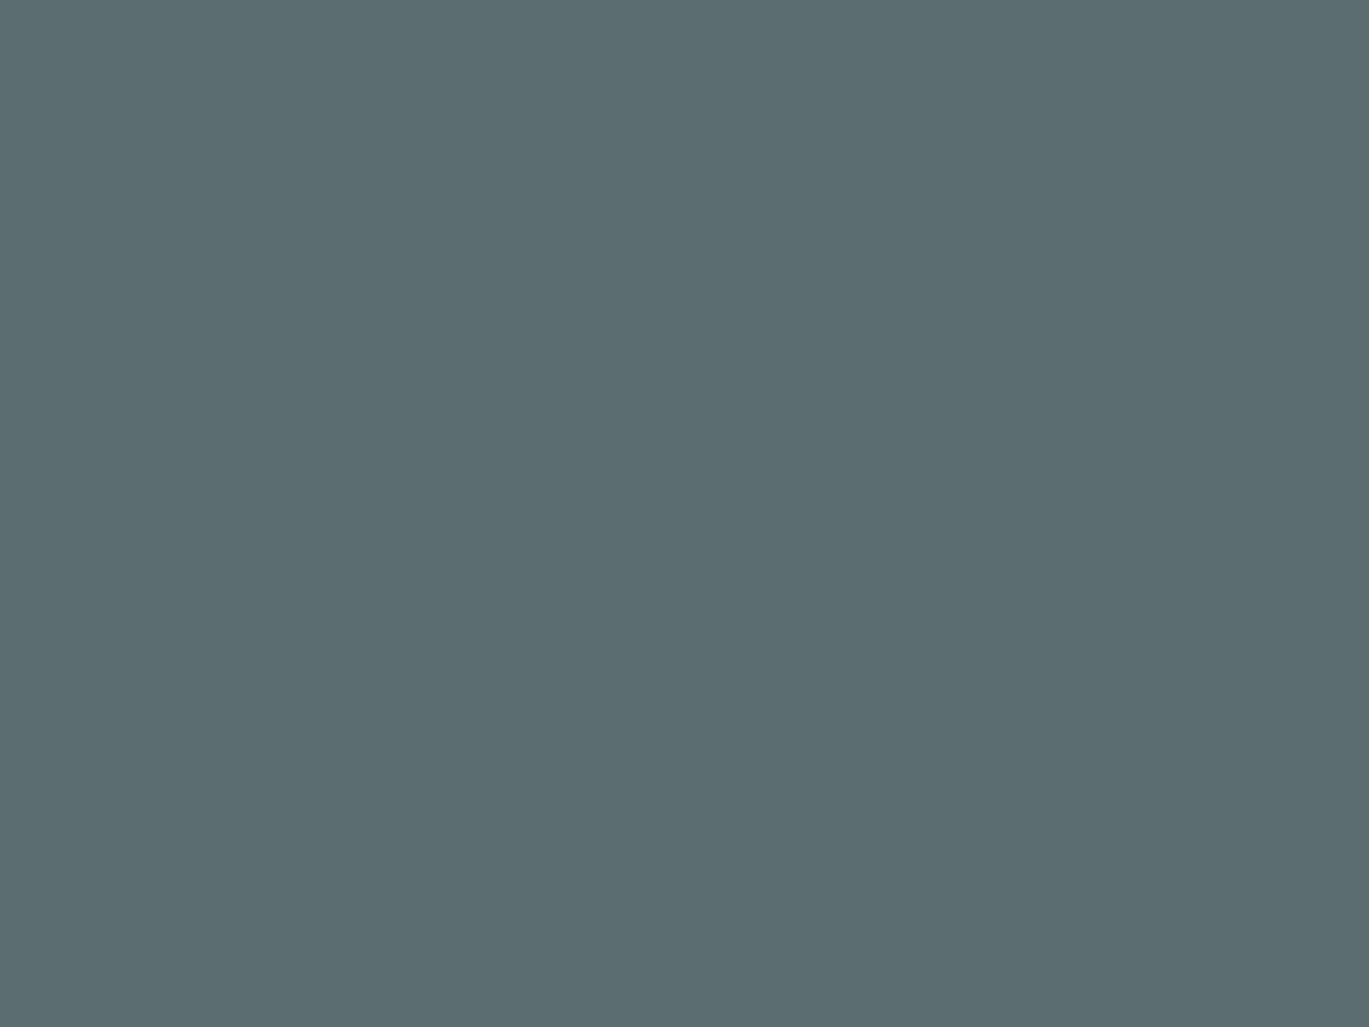 Алексей Саврасов. Вид на Кремль в ненастную погоду. 1851. Государственная Третьяковская галерея